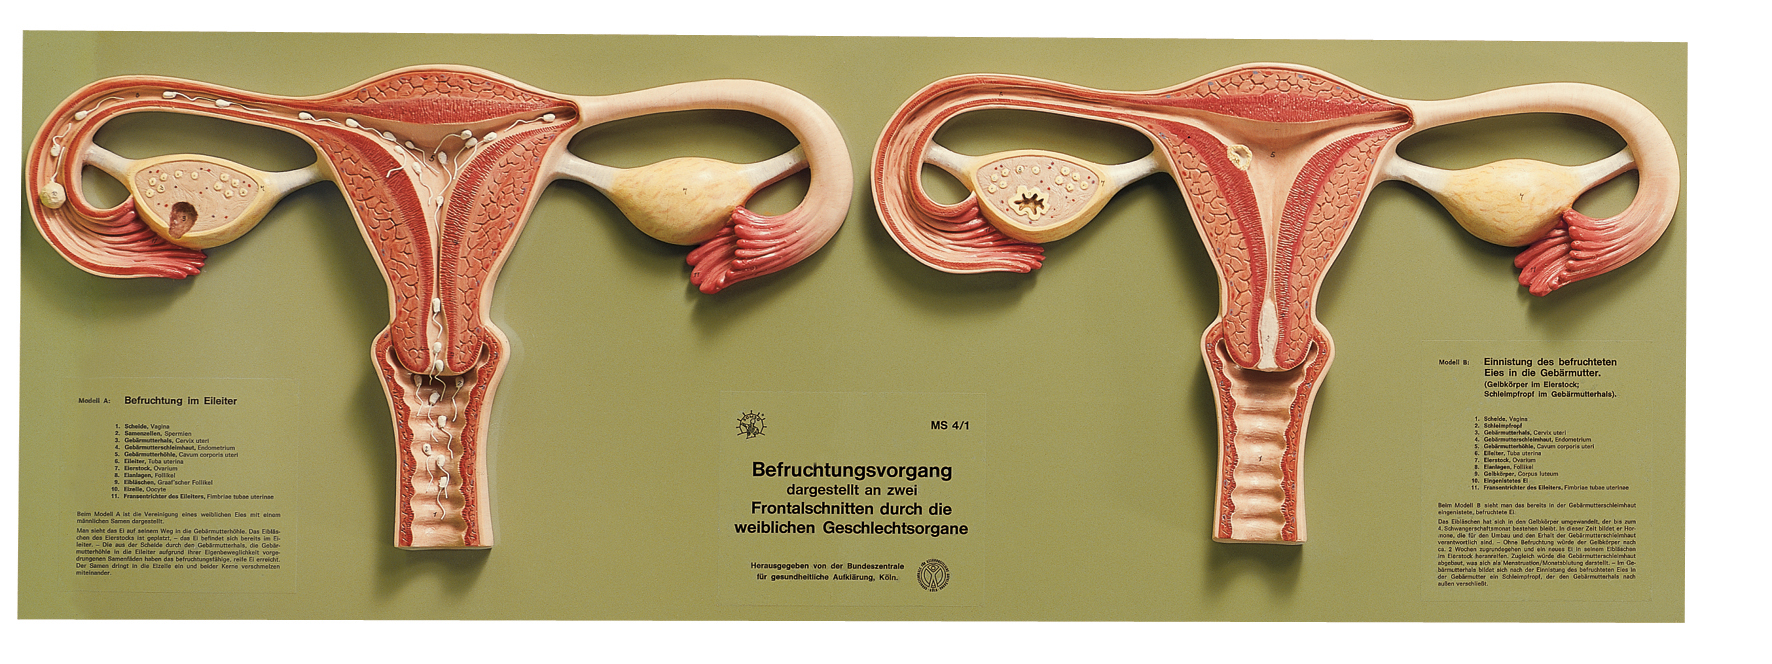 Befruchtungsvorgang Weibliche Organe Embryologie Allgemeine Anatomie Anatomische Somso Modelle Cla Coburger Lehrmittelanstalt